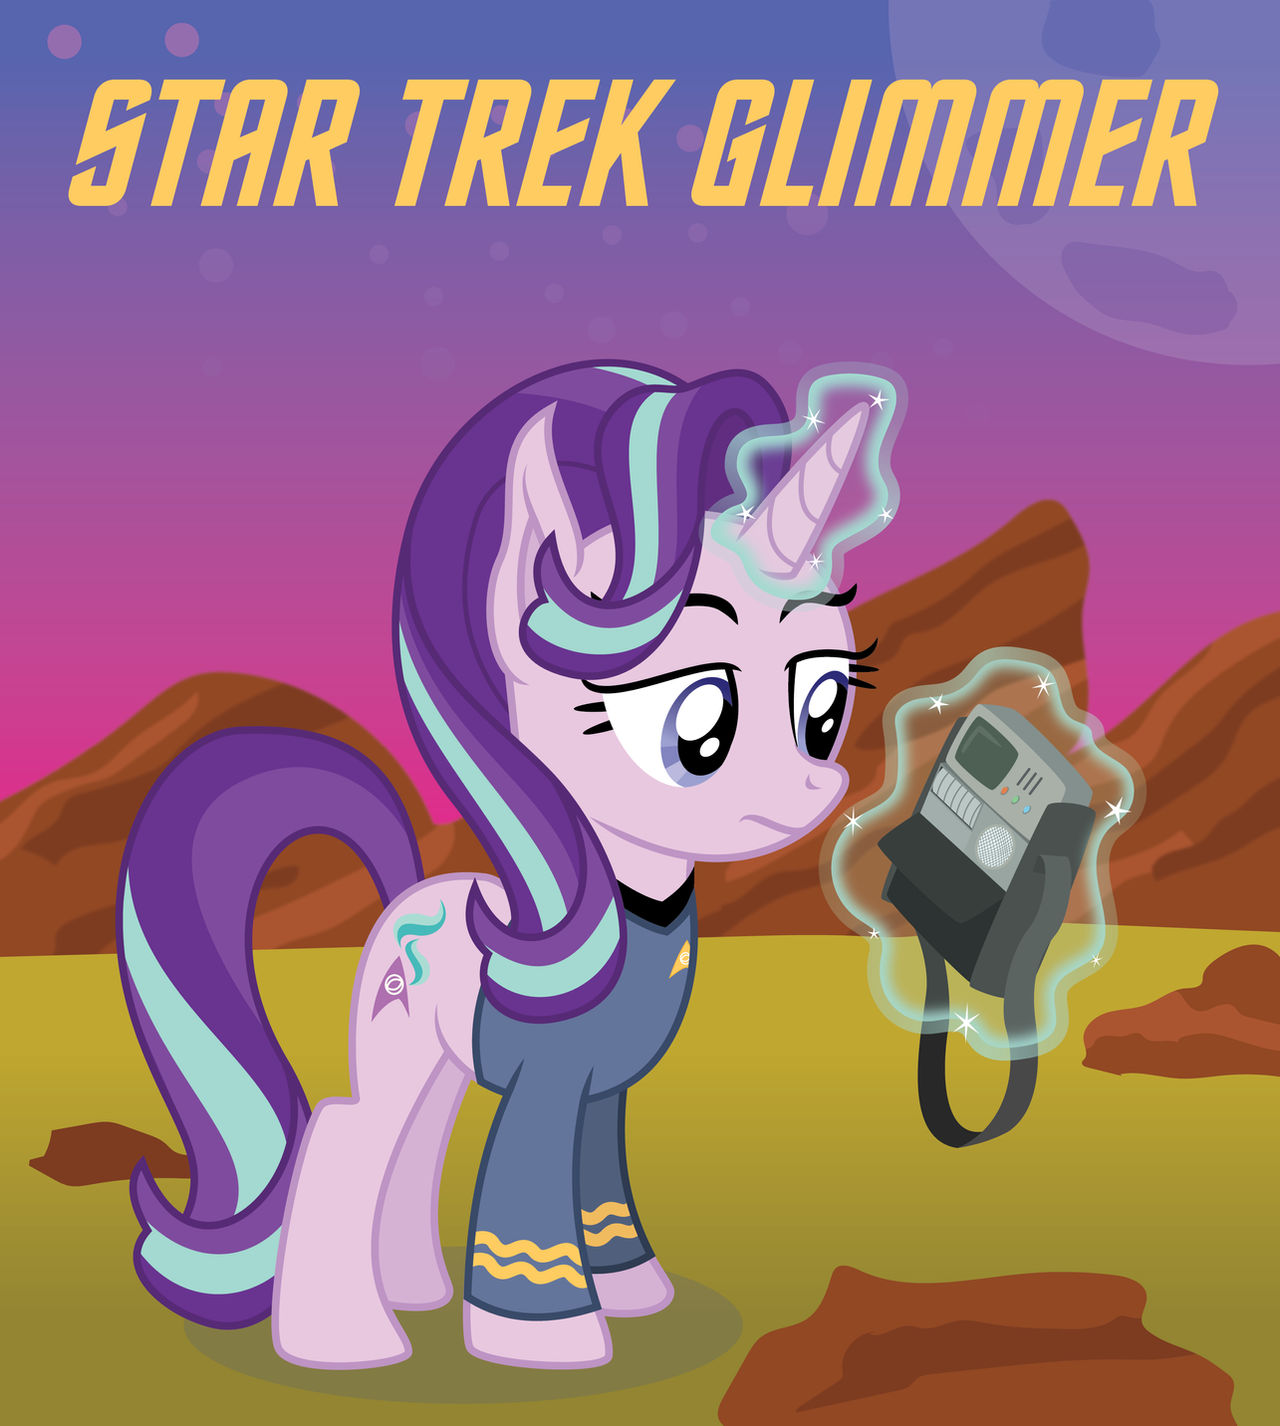 Star Trek Glimmer